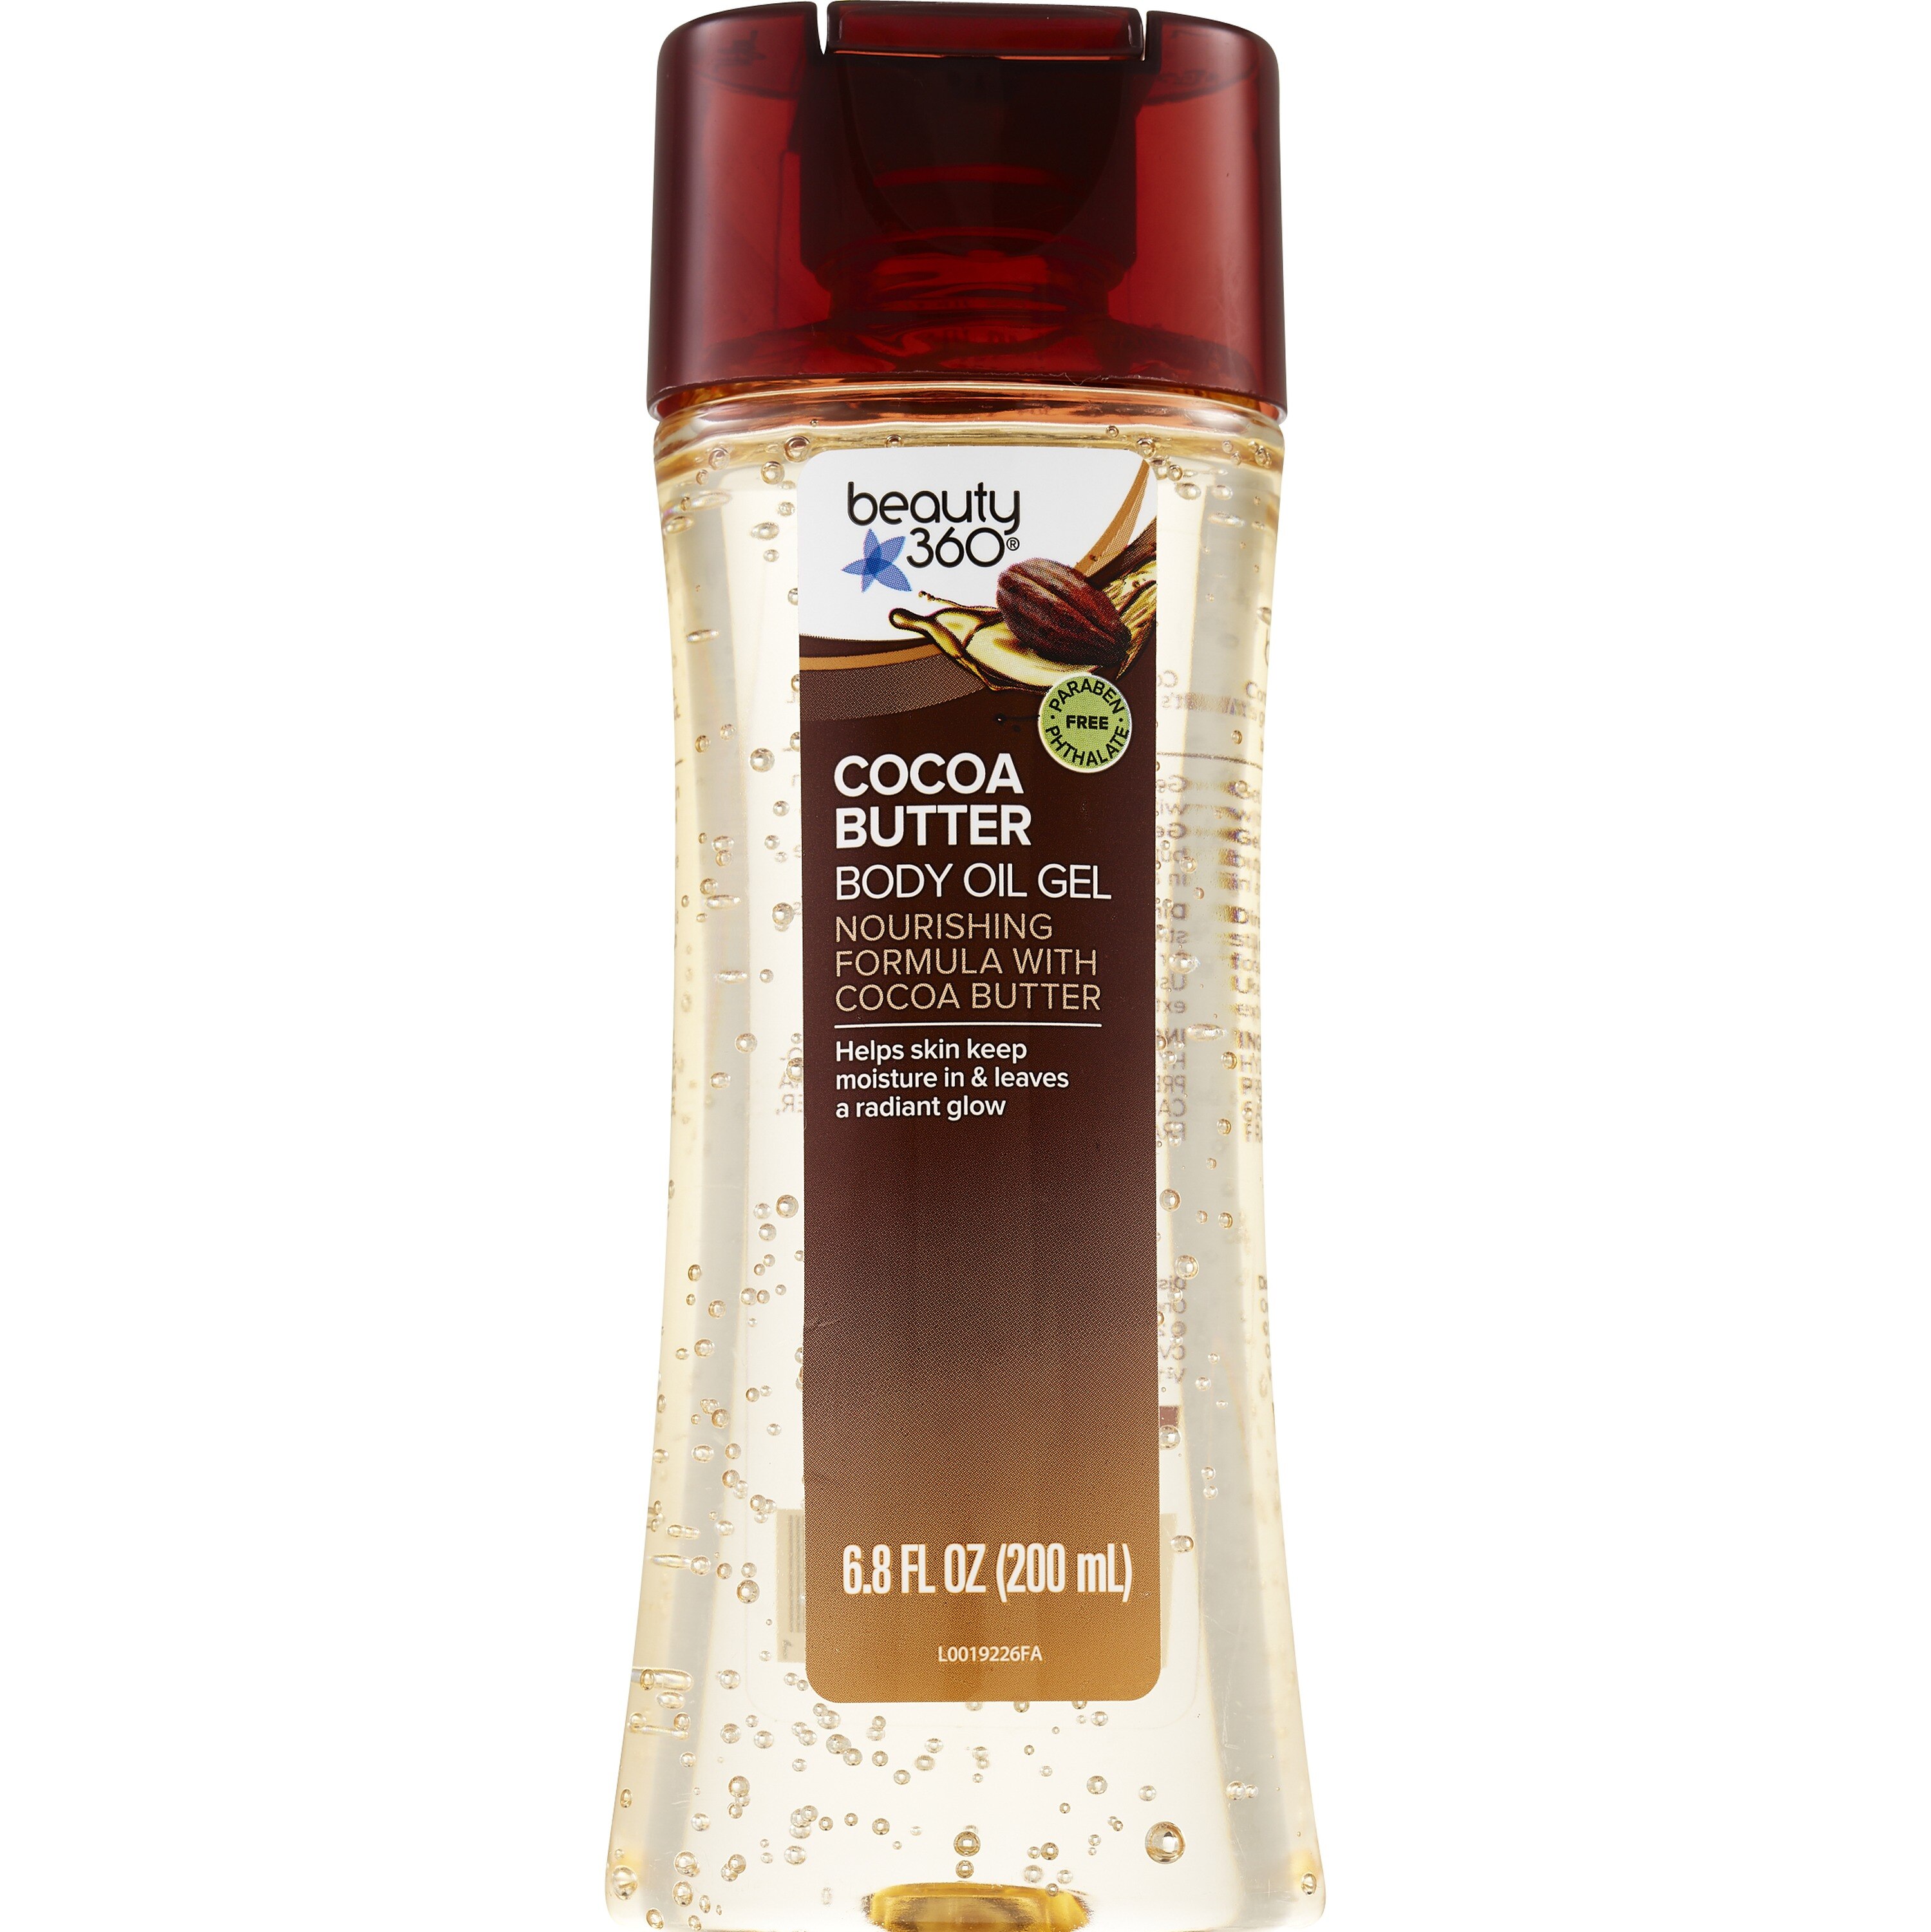 Beauty 360 Cocoa Butter Gel Body Oil